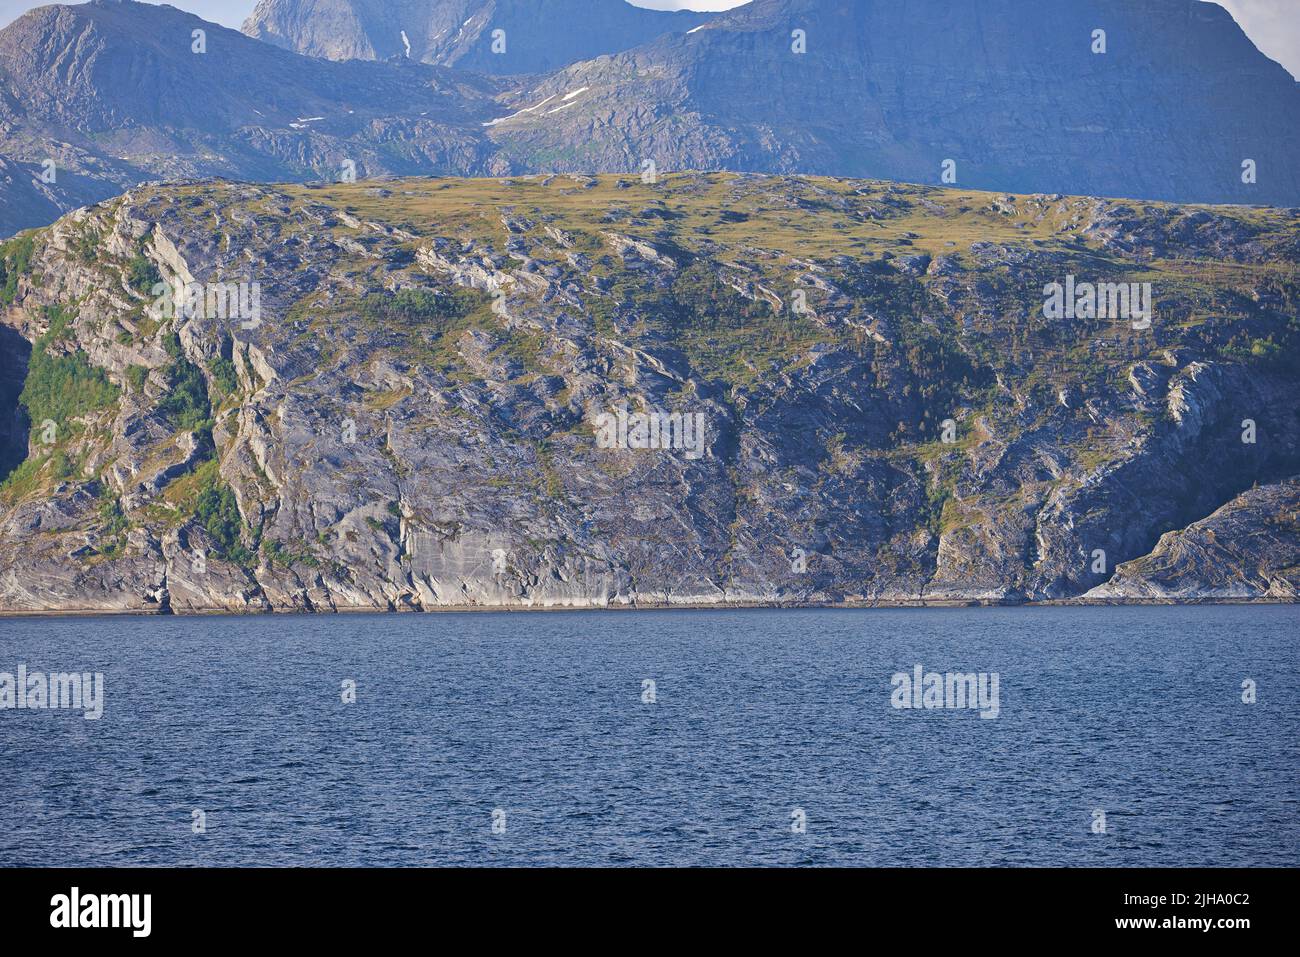 Il paesaggio di un mare calmo vicino a una montagna rocciosa. Una serie di verdi colline montane presso un grande lago in Norvegia. Oceano pacifico in una costa selvaggia di Foto Stock